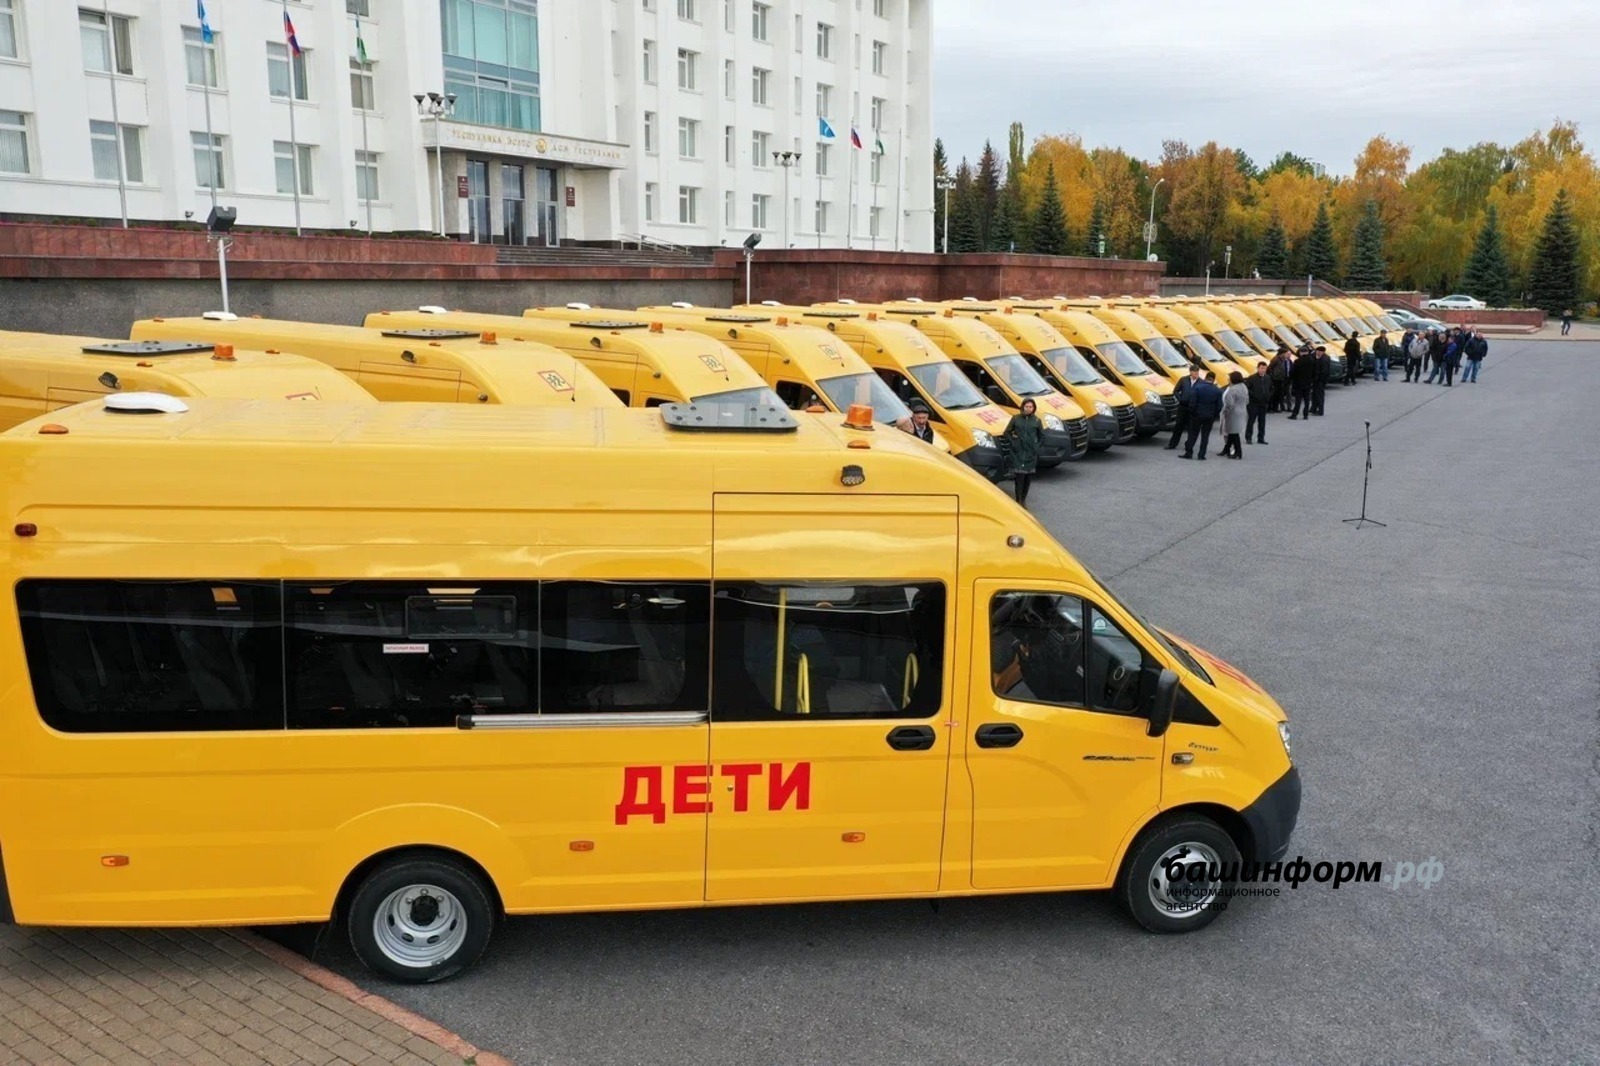 Регионы России дополнительно получат более тысячи новых школьных автобусов и 937 машин скорой помощи